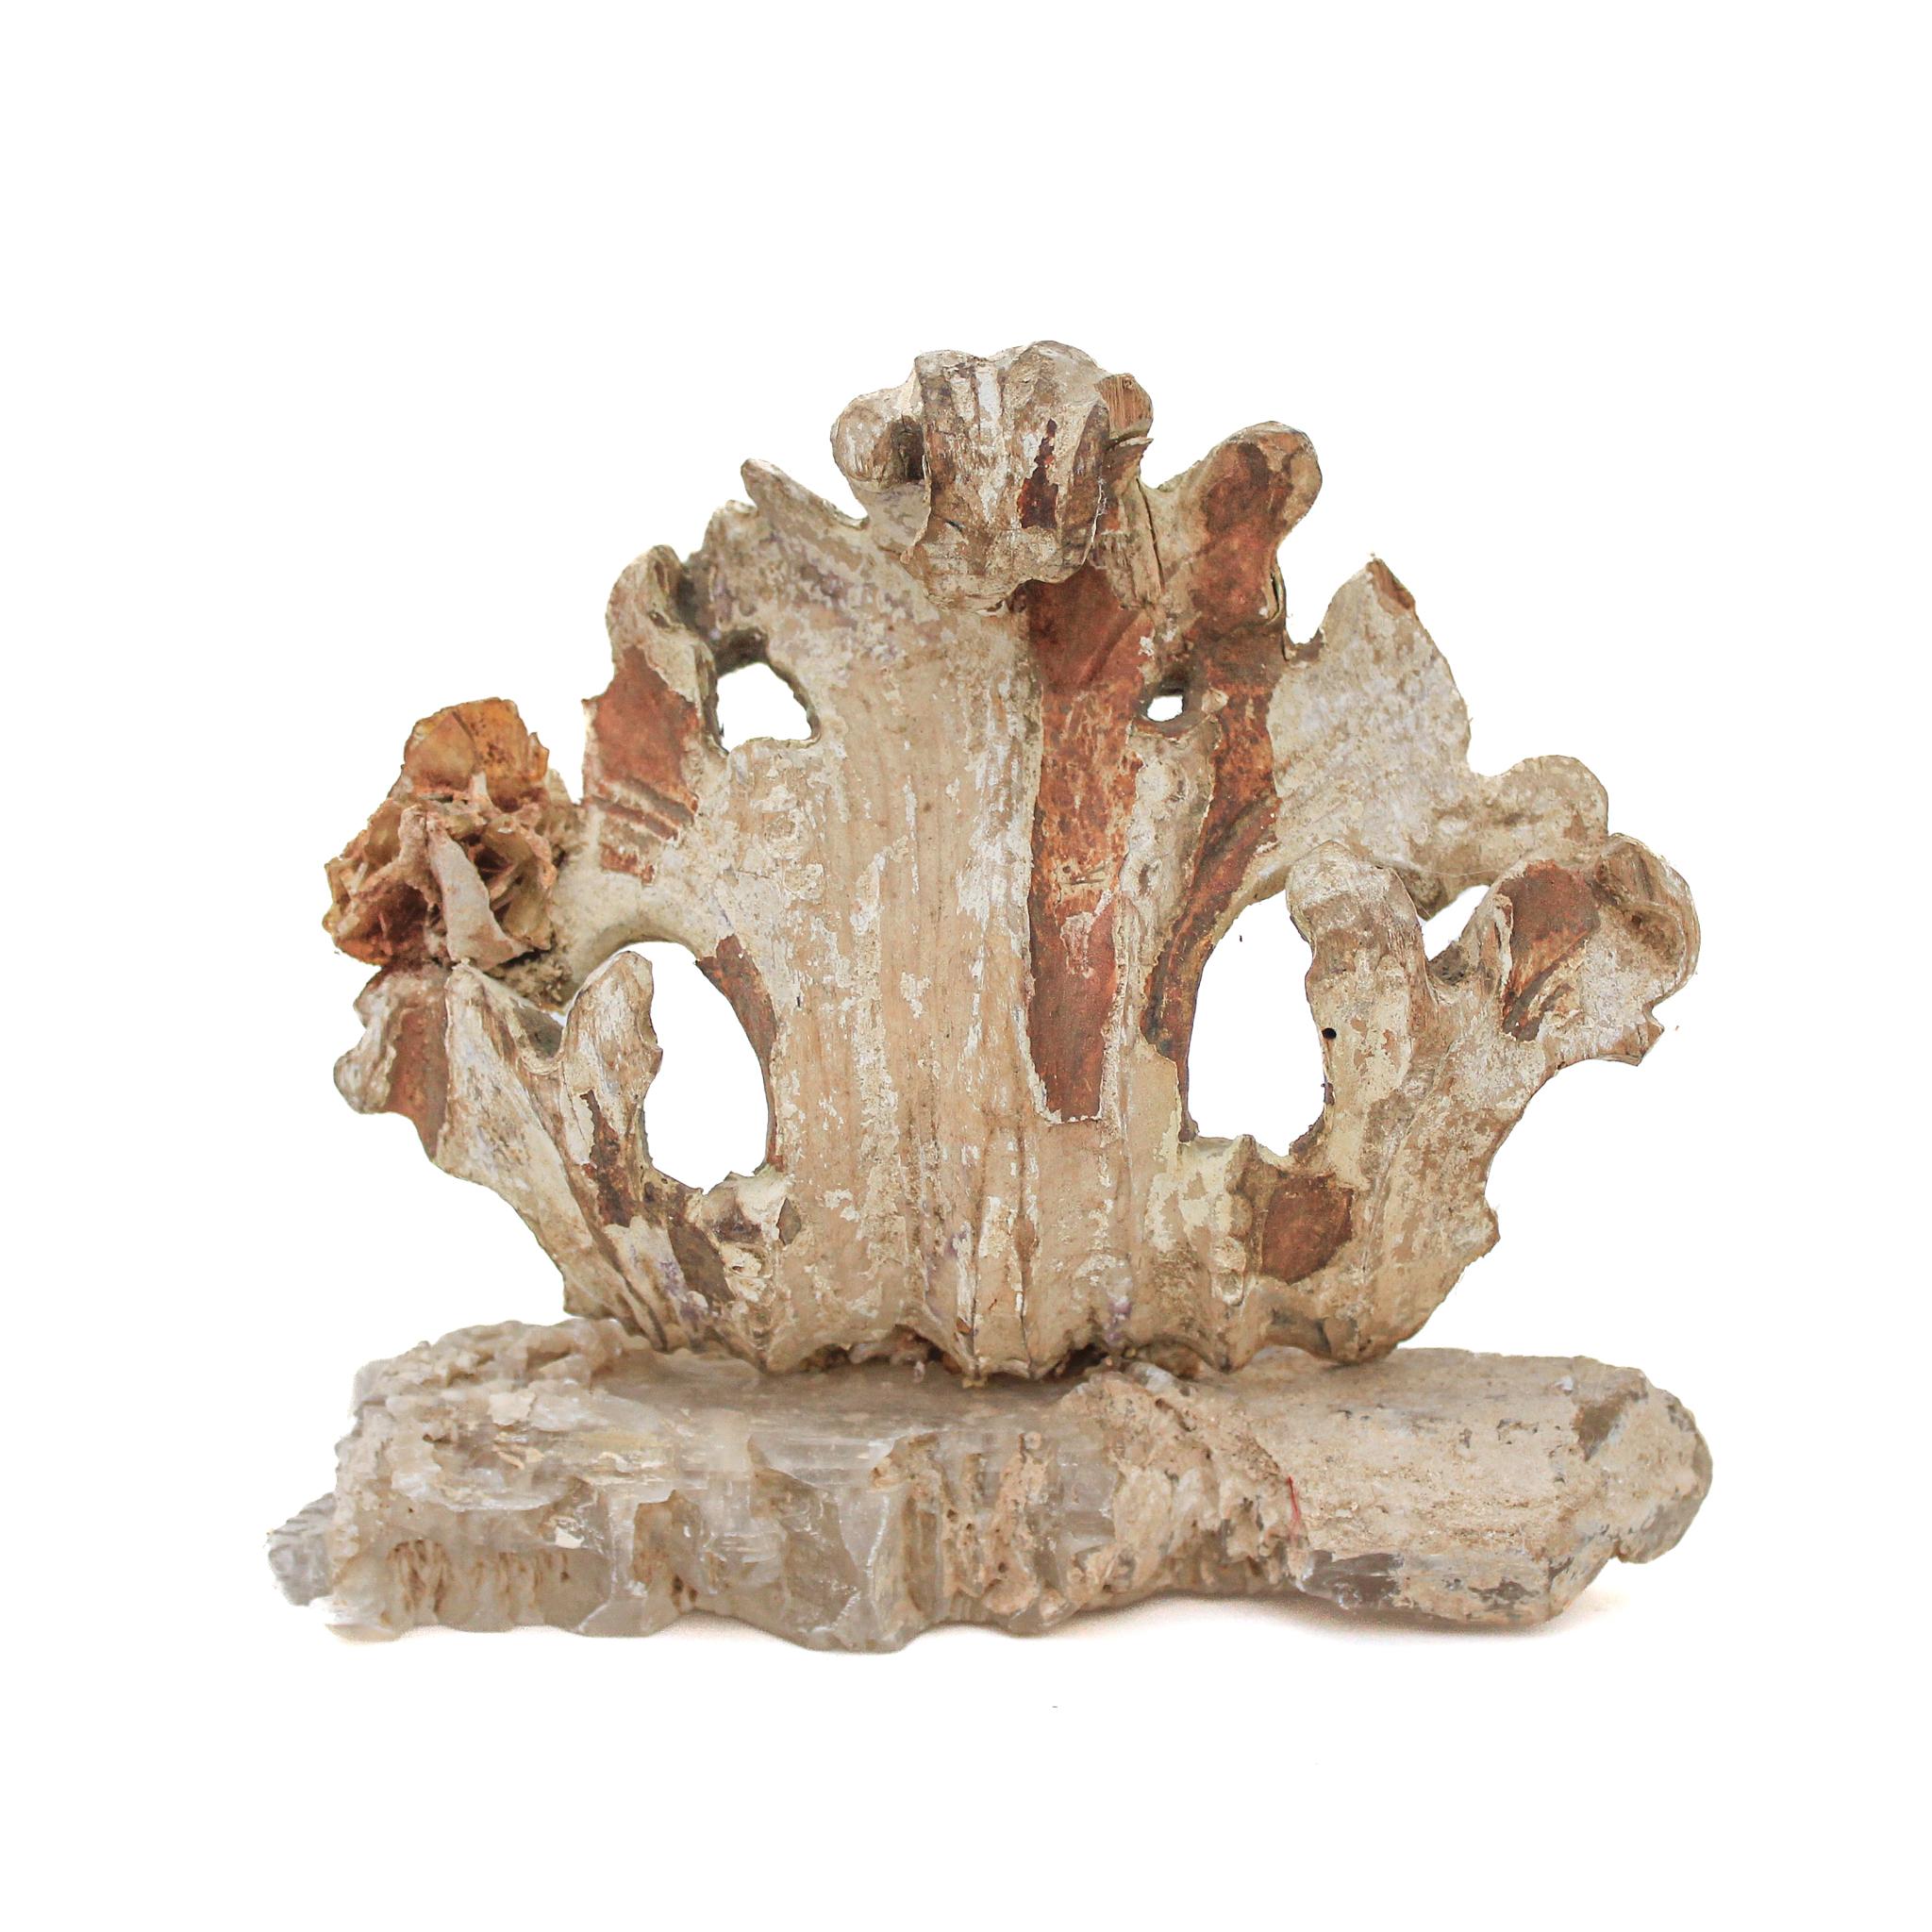 italienisches Fragment aus dem 17. Jahrhundert mit Wulfenit auf einem fischschwanzförmigen Selenit-Sockel

Dieses Fragment stammt aus einer Kirche in Florenz. Es wurde gefunden und vor dem historischen Hochwasser des Arno im Jahr 1966